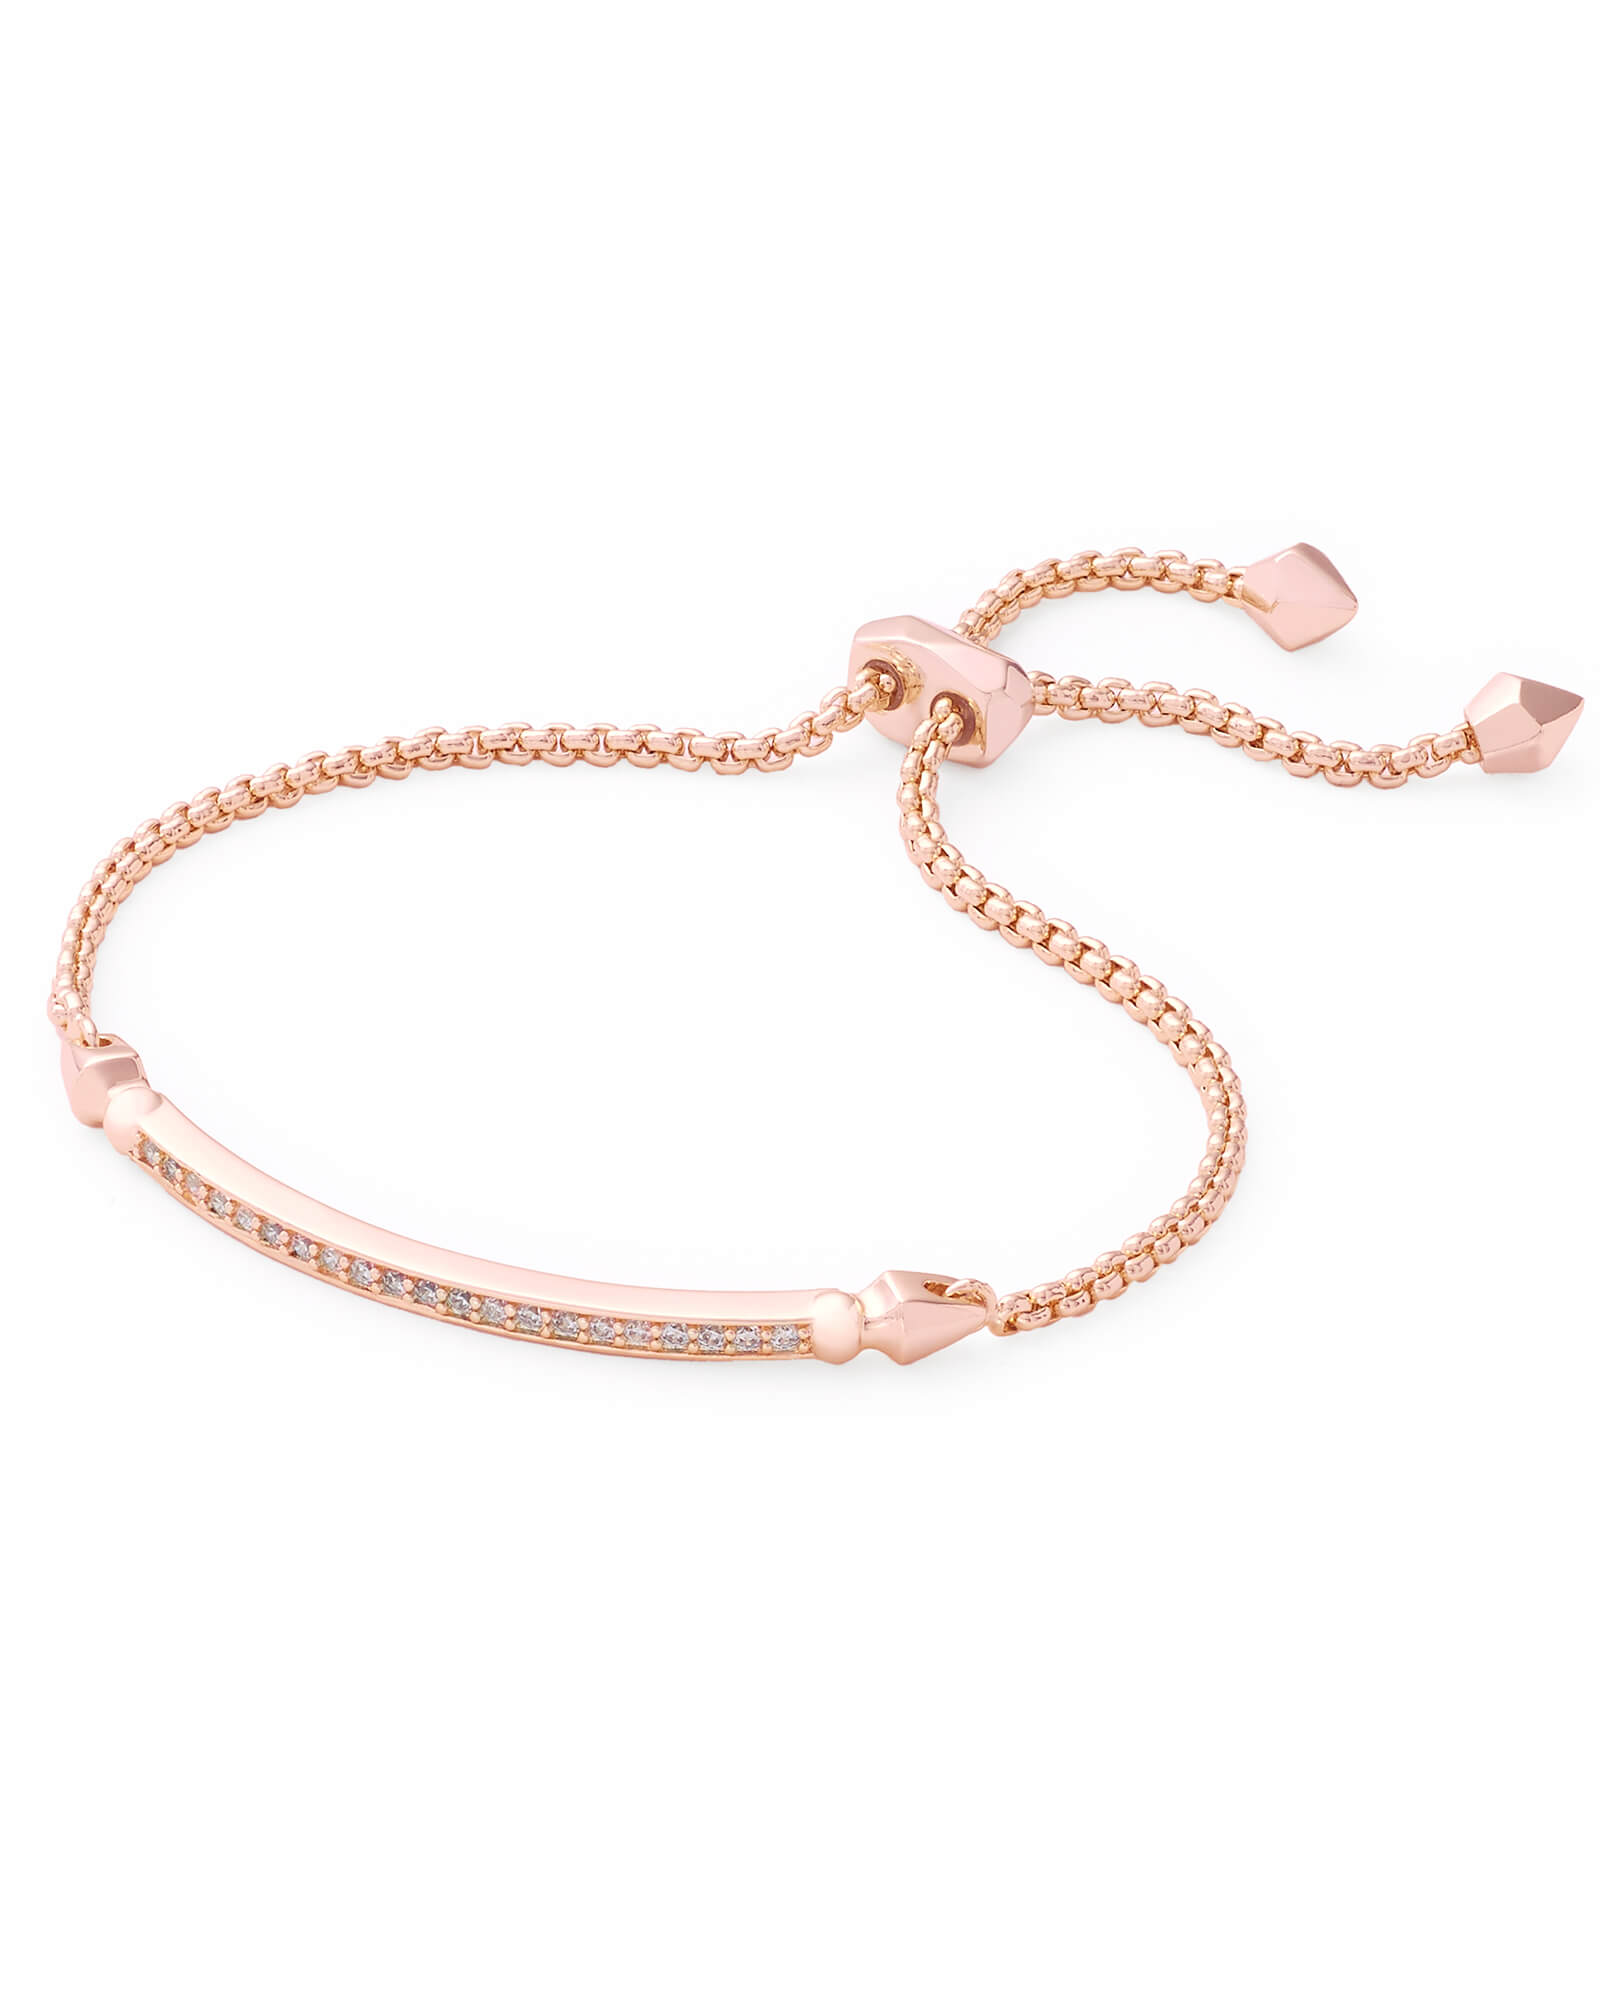 Ott Adjustable Chain Bracelet in Rose Gold | Kendra Scott